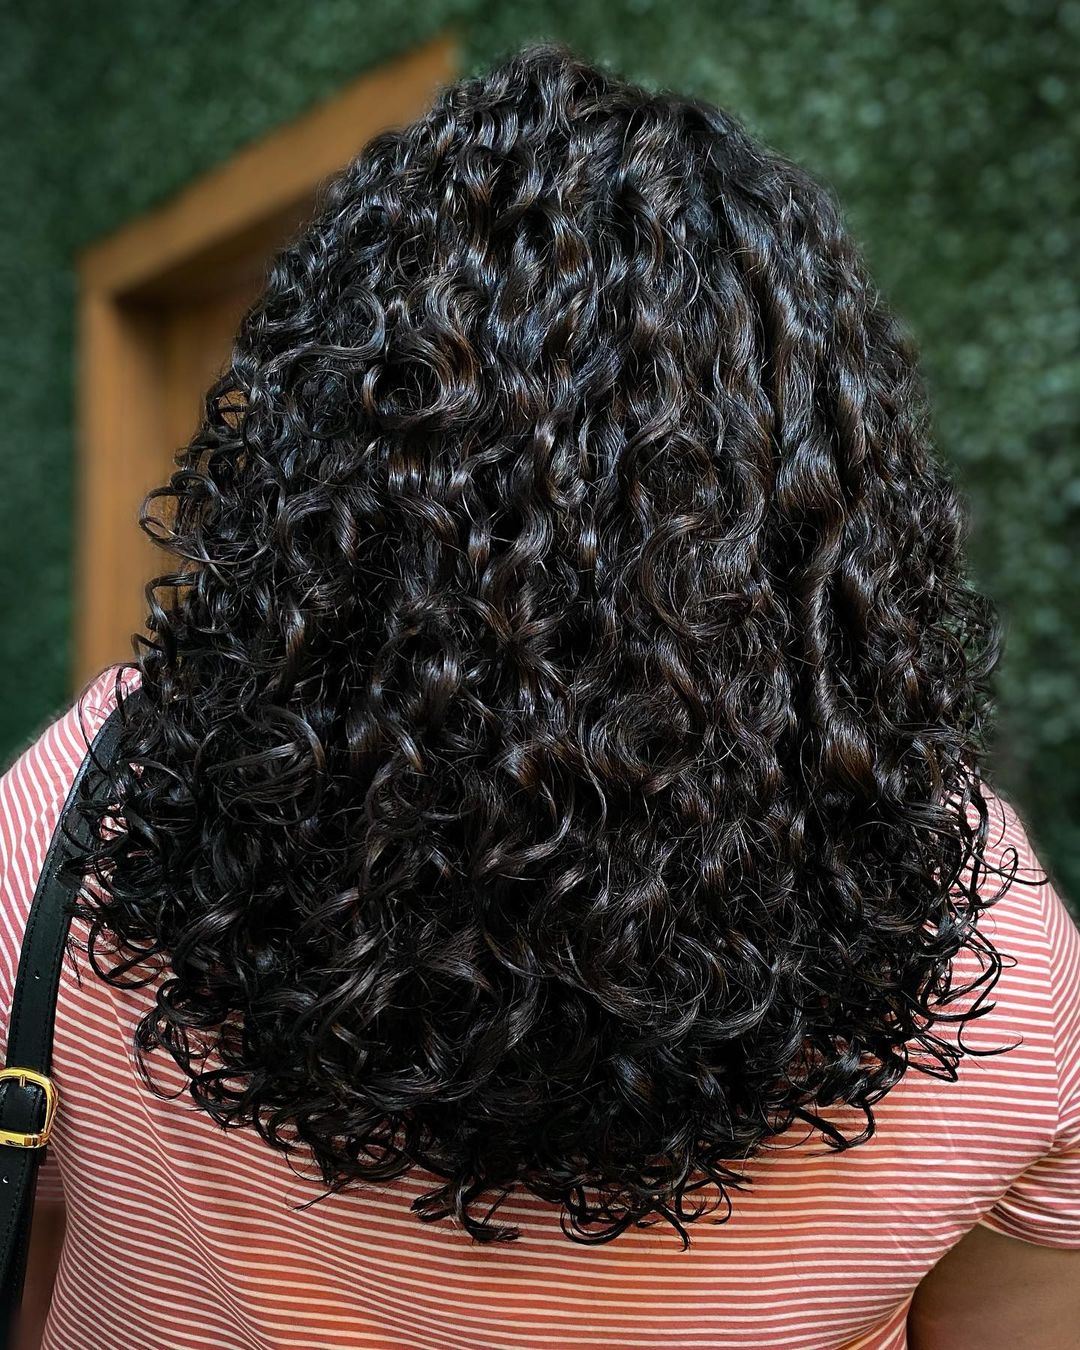 Corte rezo em forma de U para cabelos compridos encaracolados